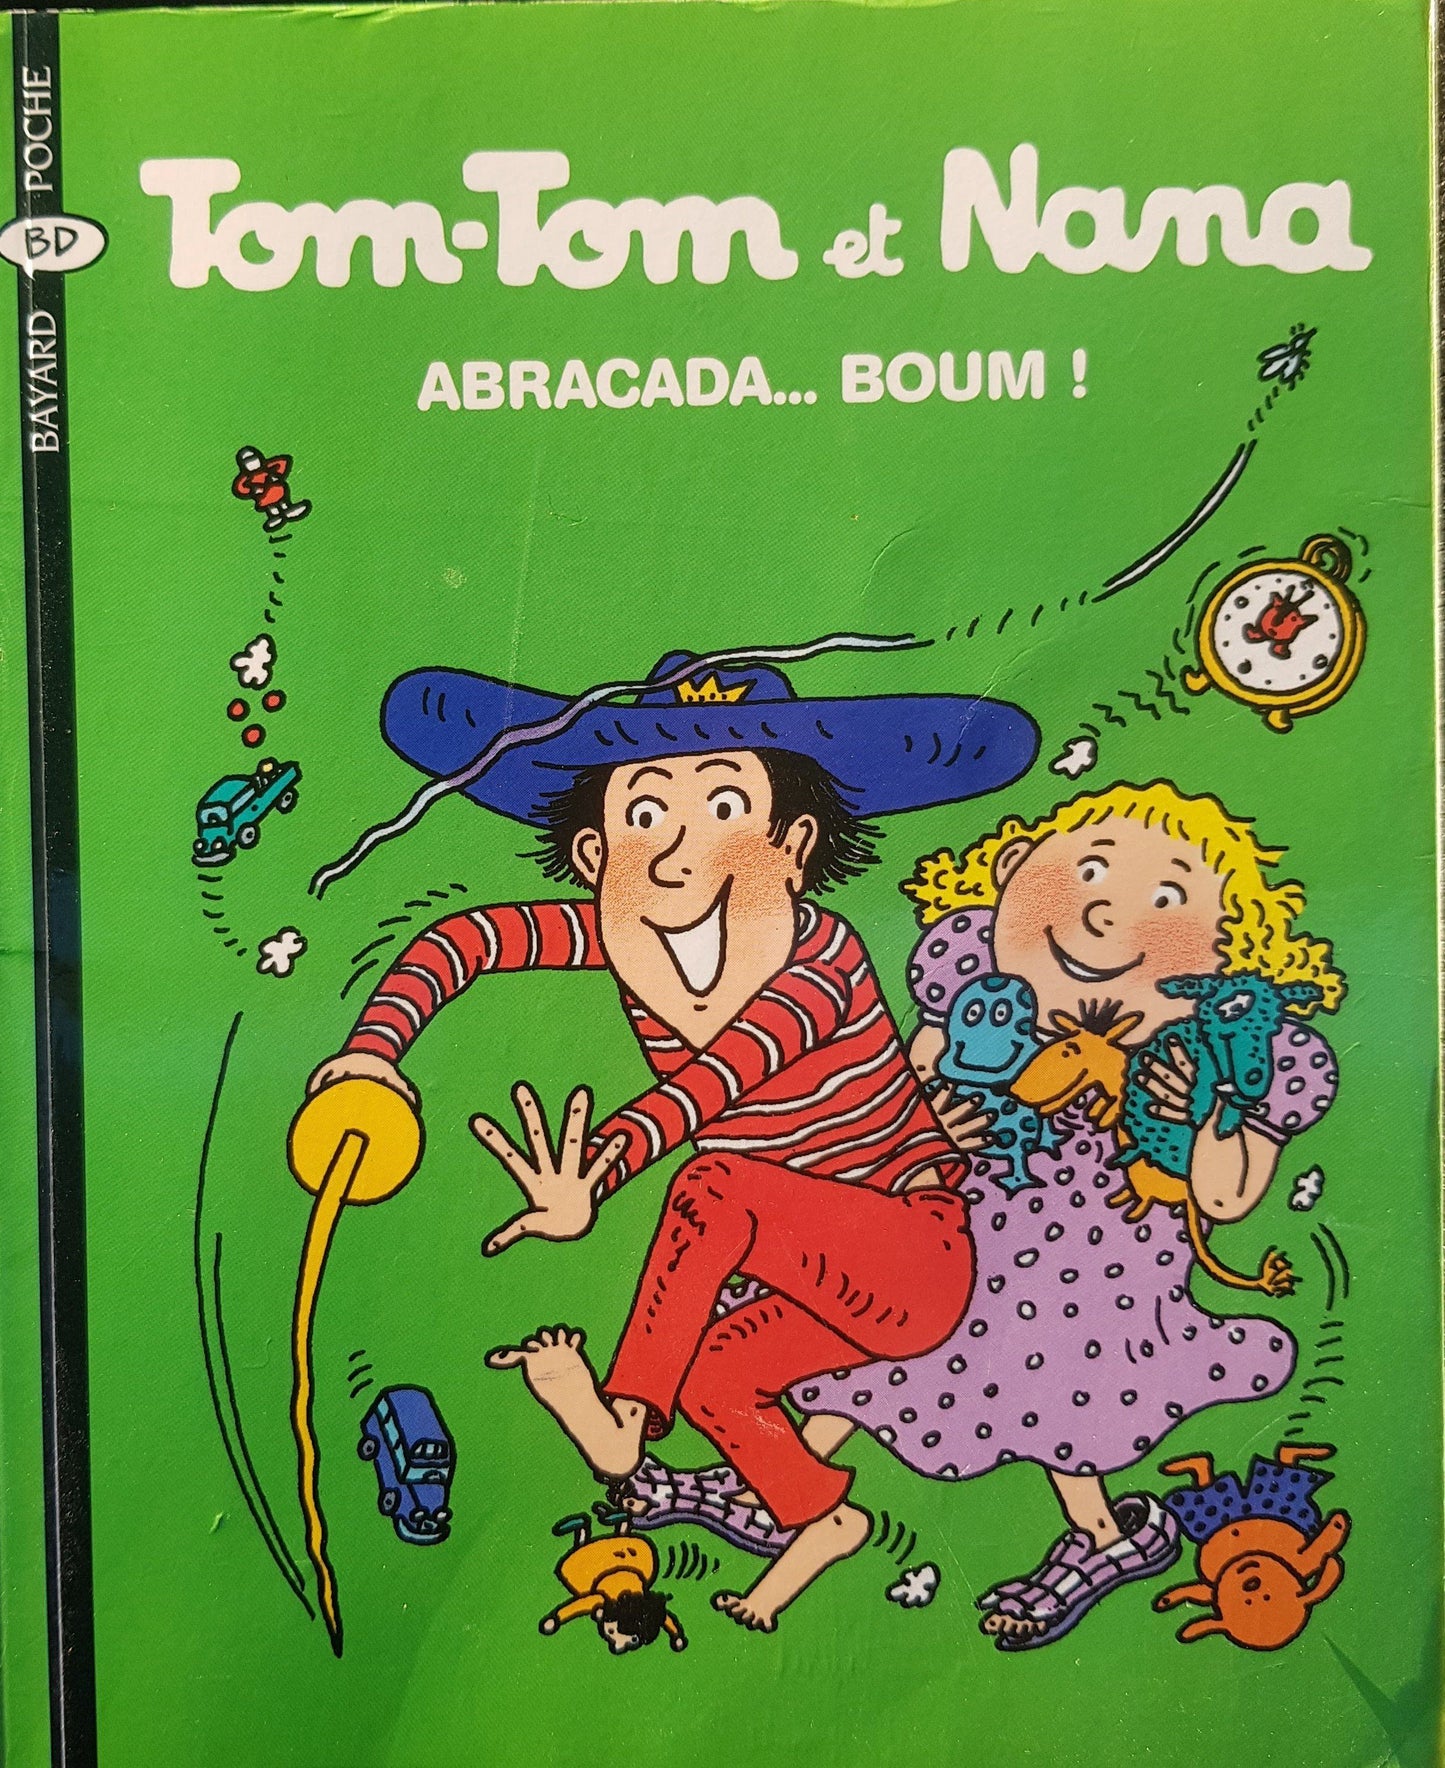 Abracada…. Boum! Like New Tom -Tom et Nana  (4616187084855)